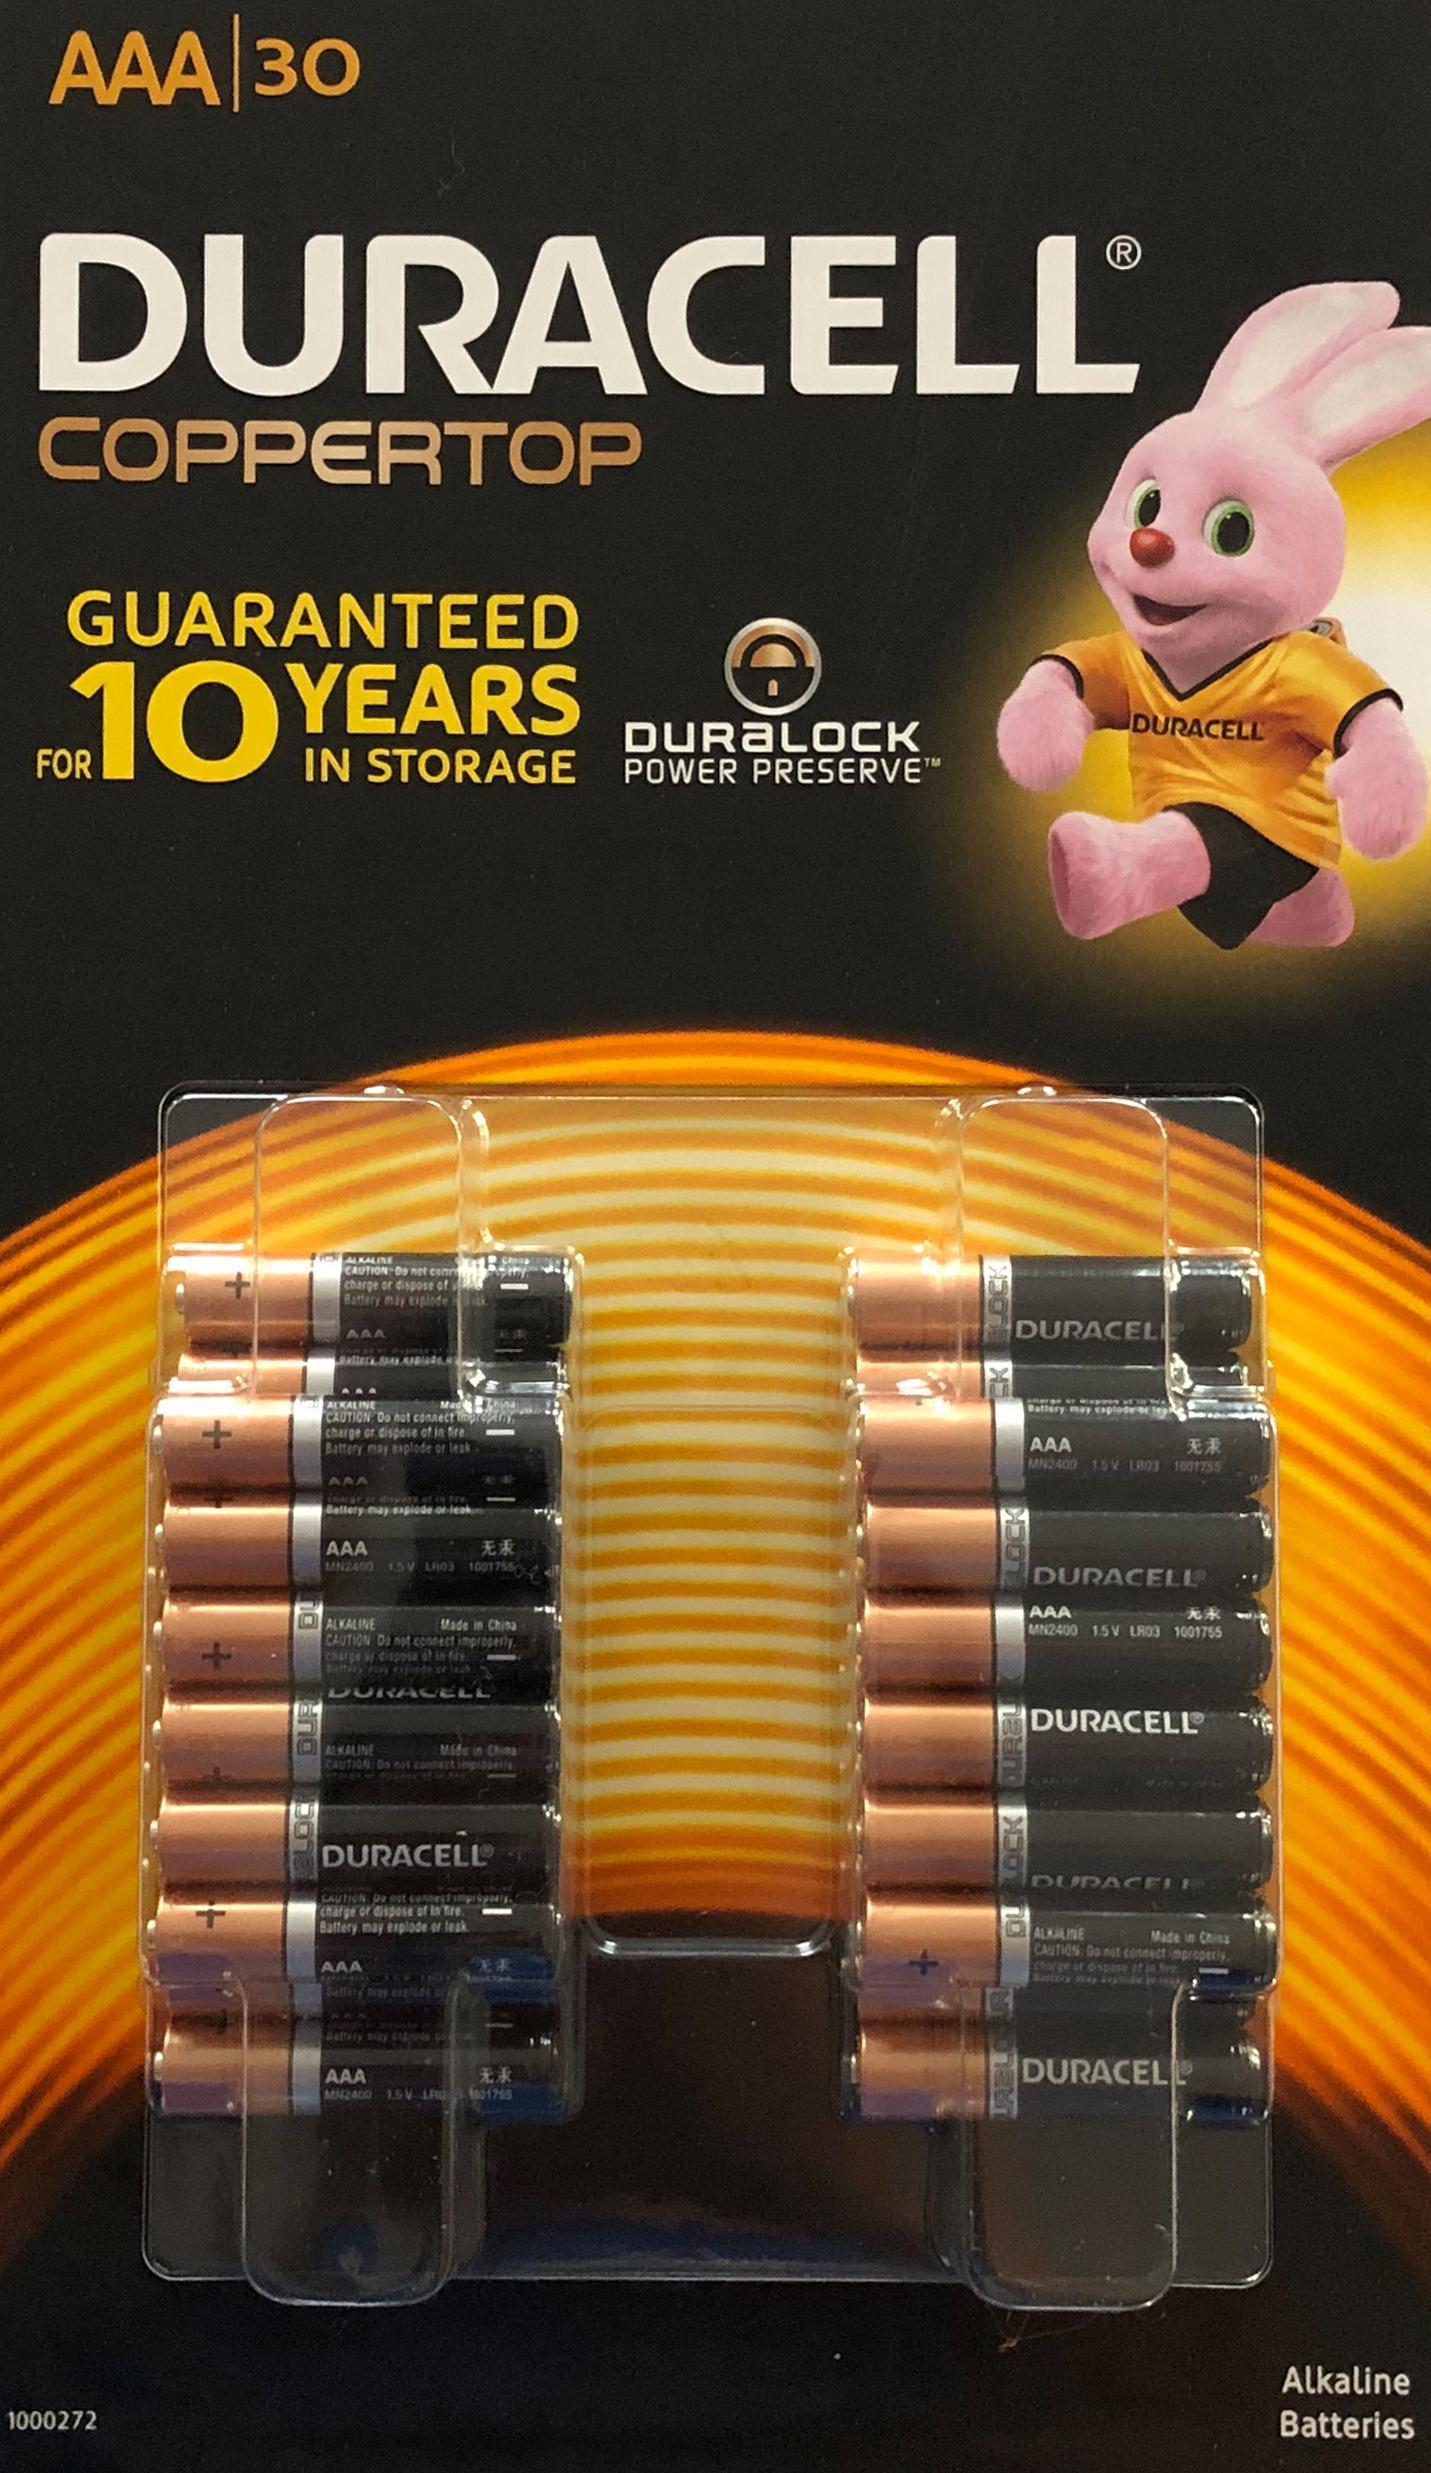 Duracell duralock Alkaline Batteries AAA 30 pack